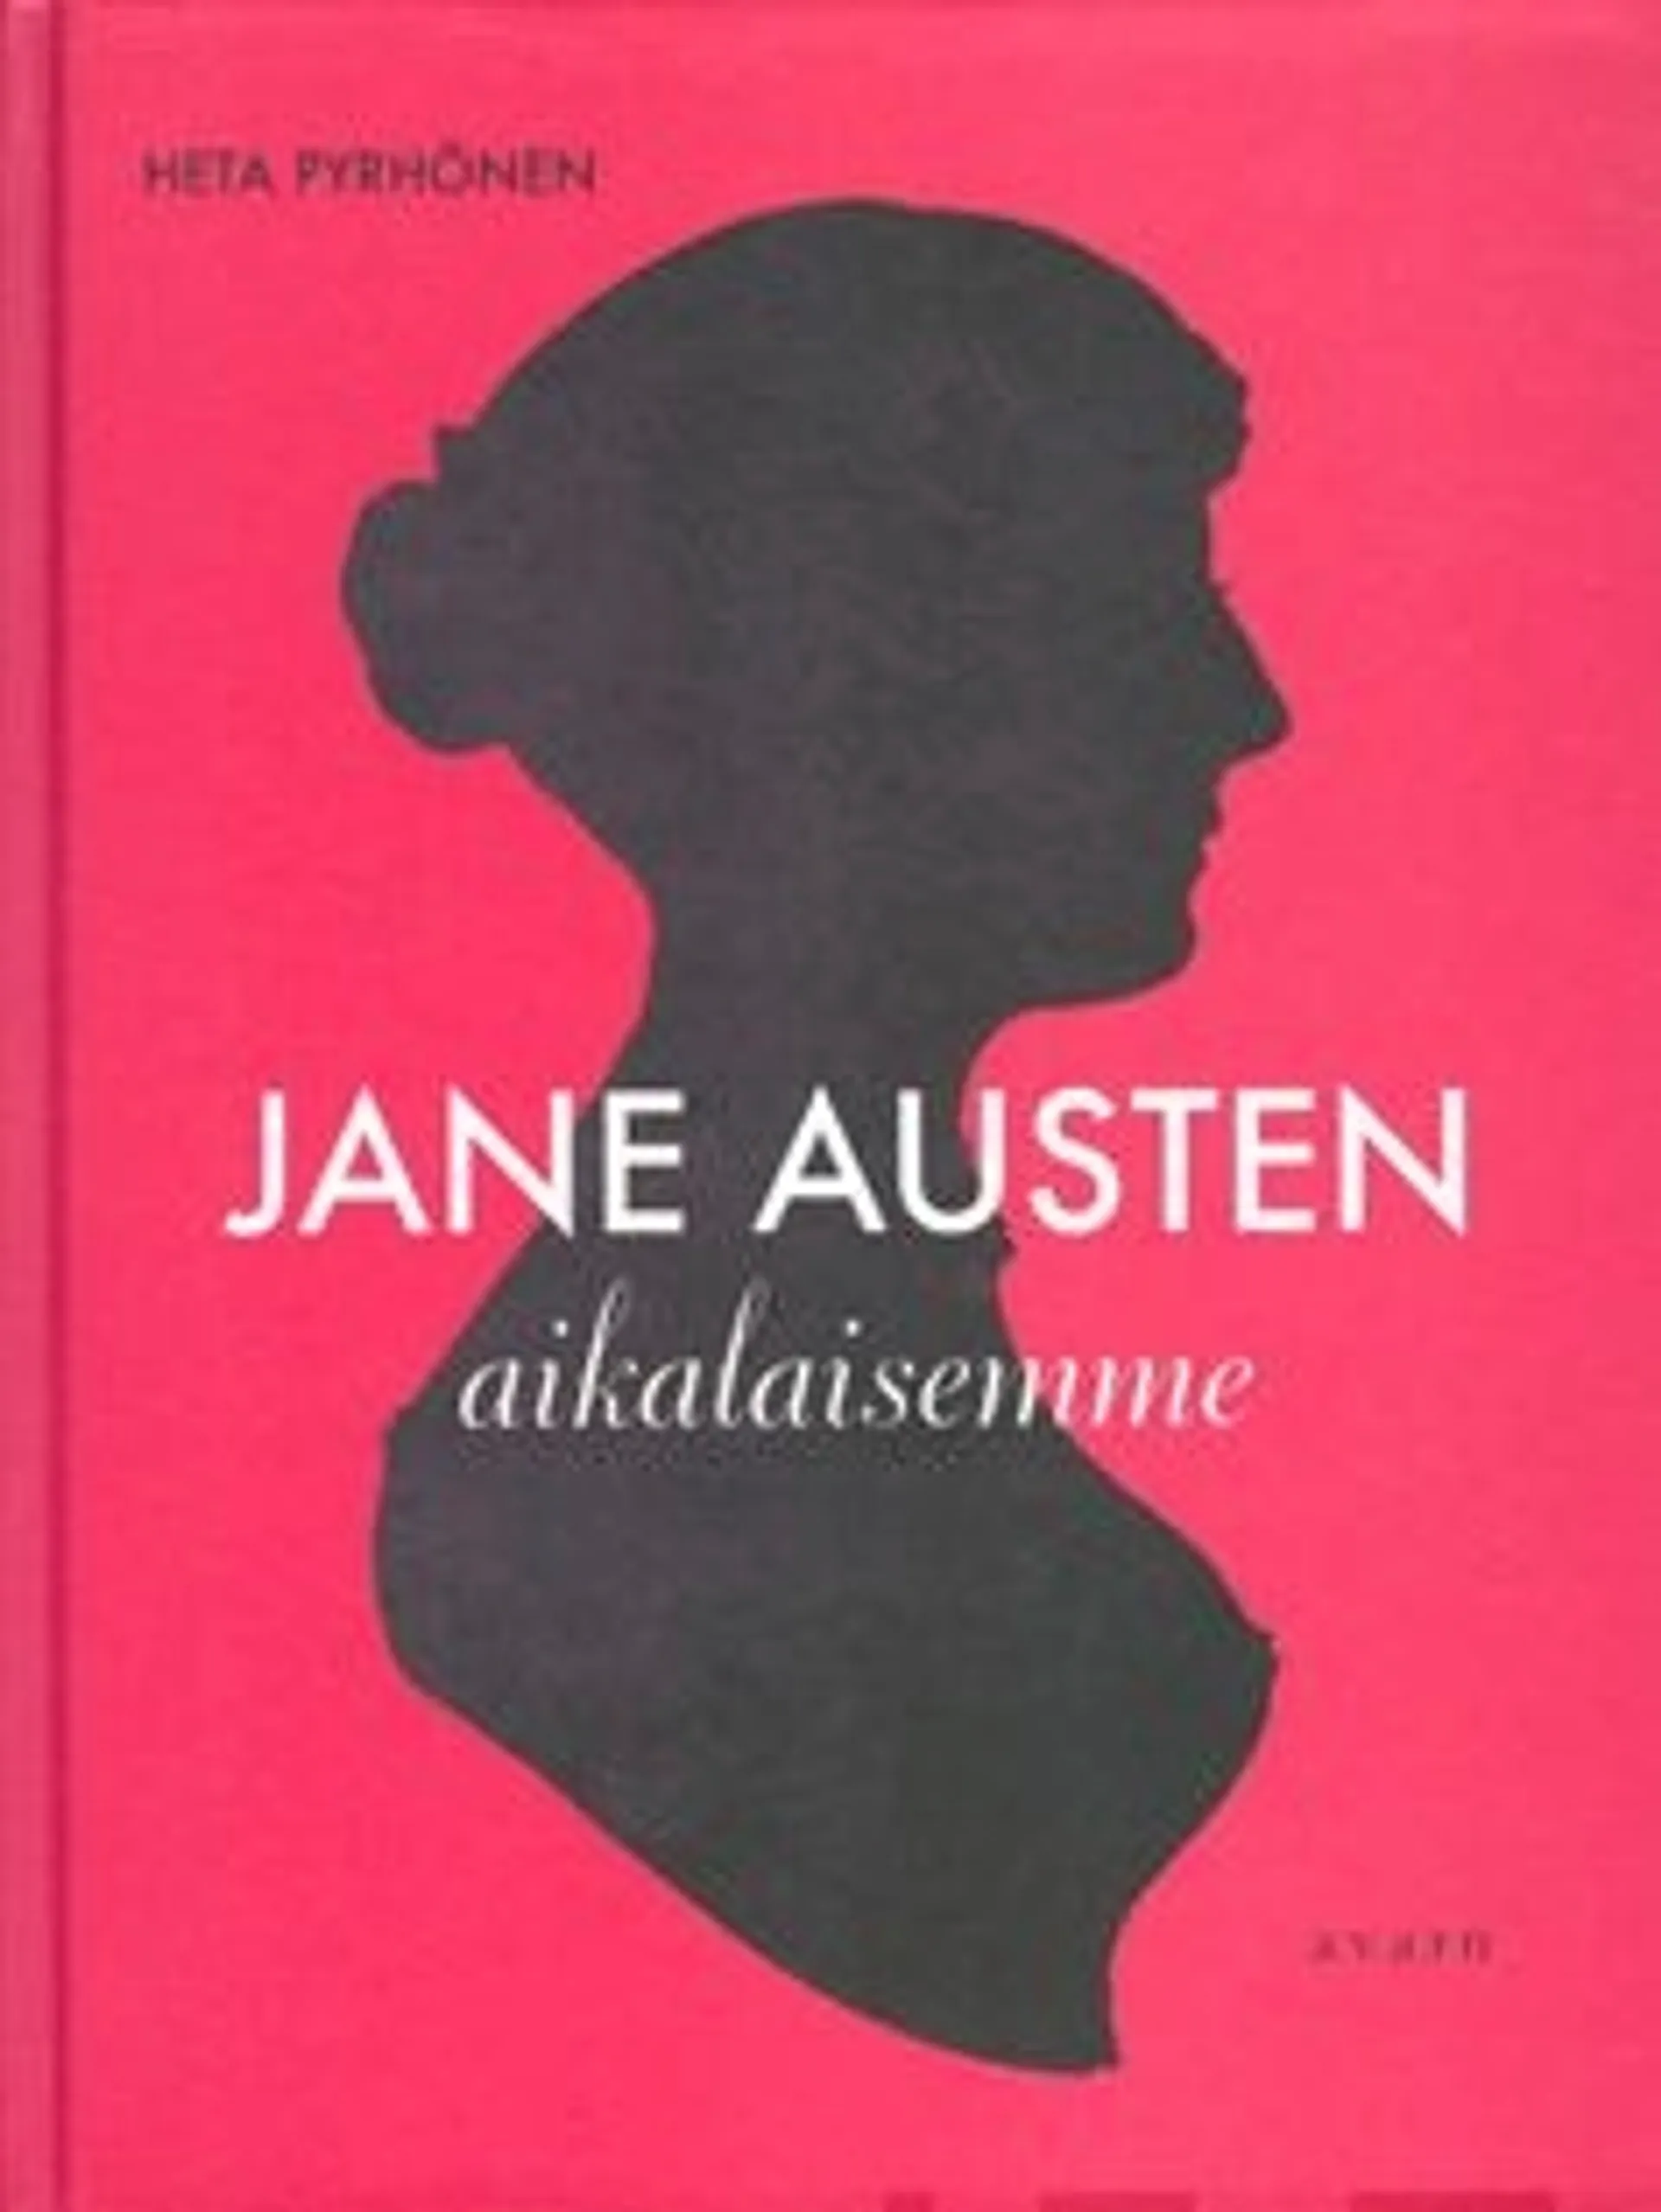 Pyrhönen, Jane Austen aikalaisemme